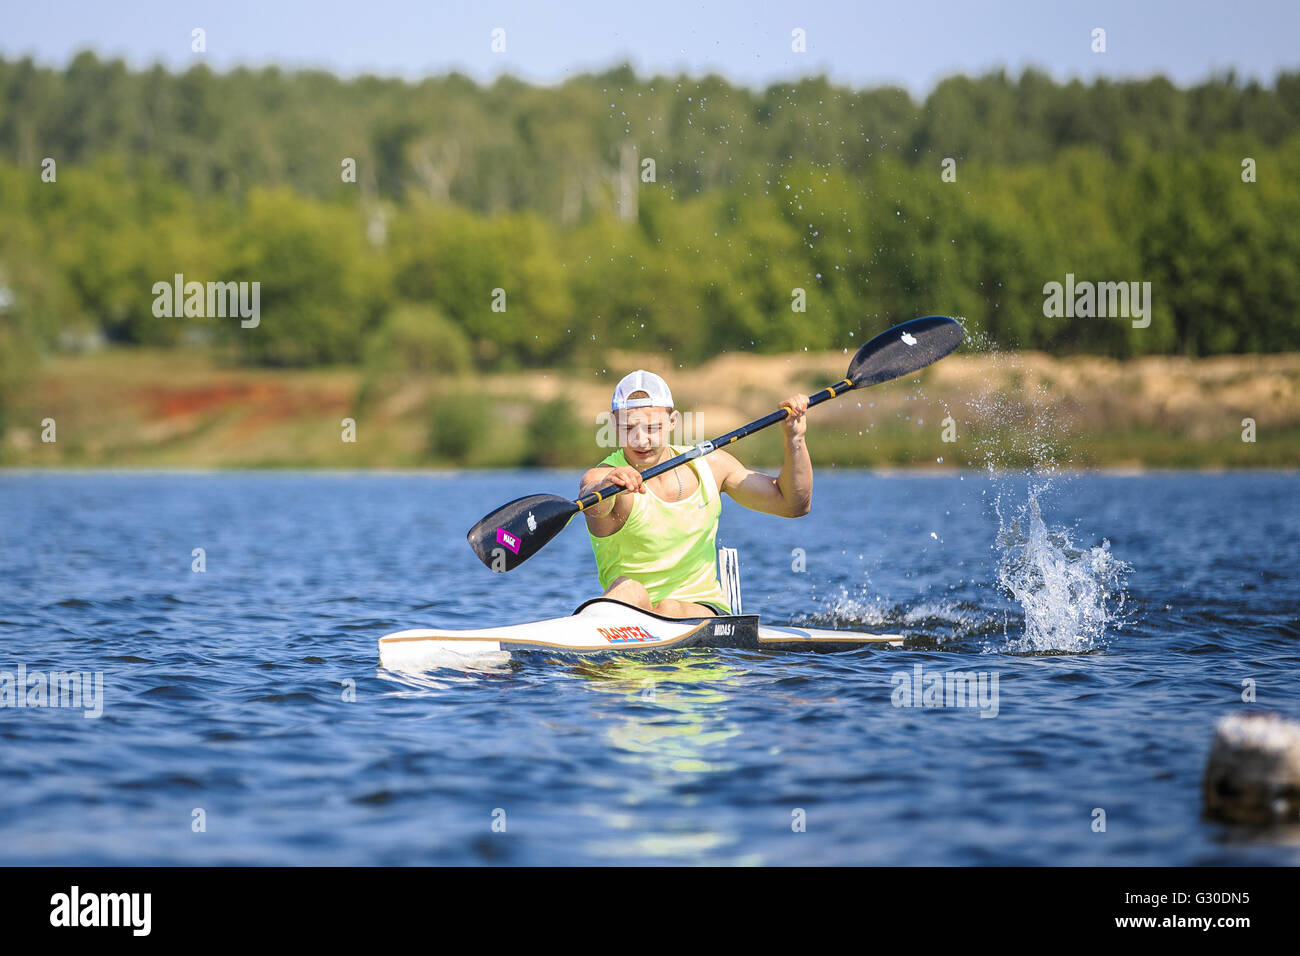 Athleten am Rudern Kajak auf See, Spray des Wassers unter Paddel während Ural Meisterschaft im Rudern Stockfoto